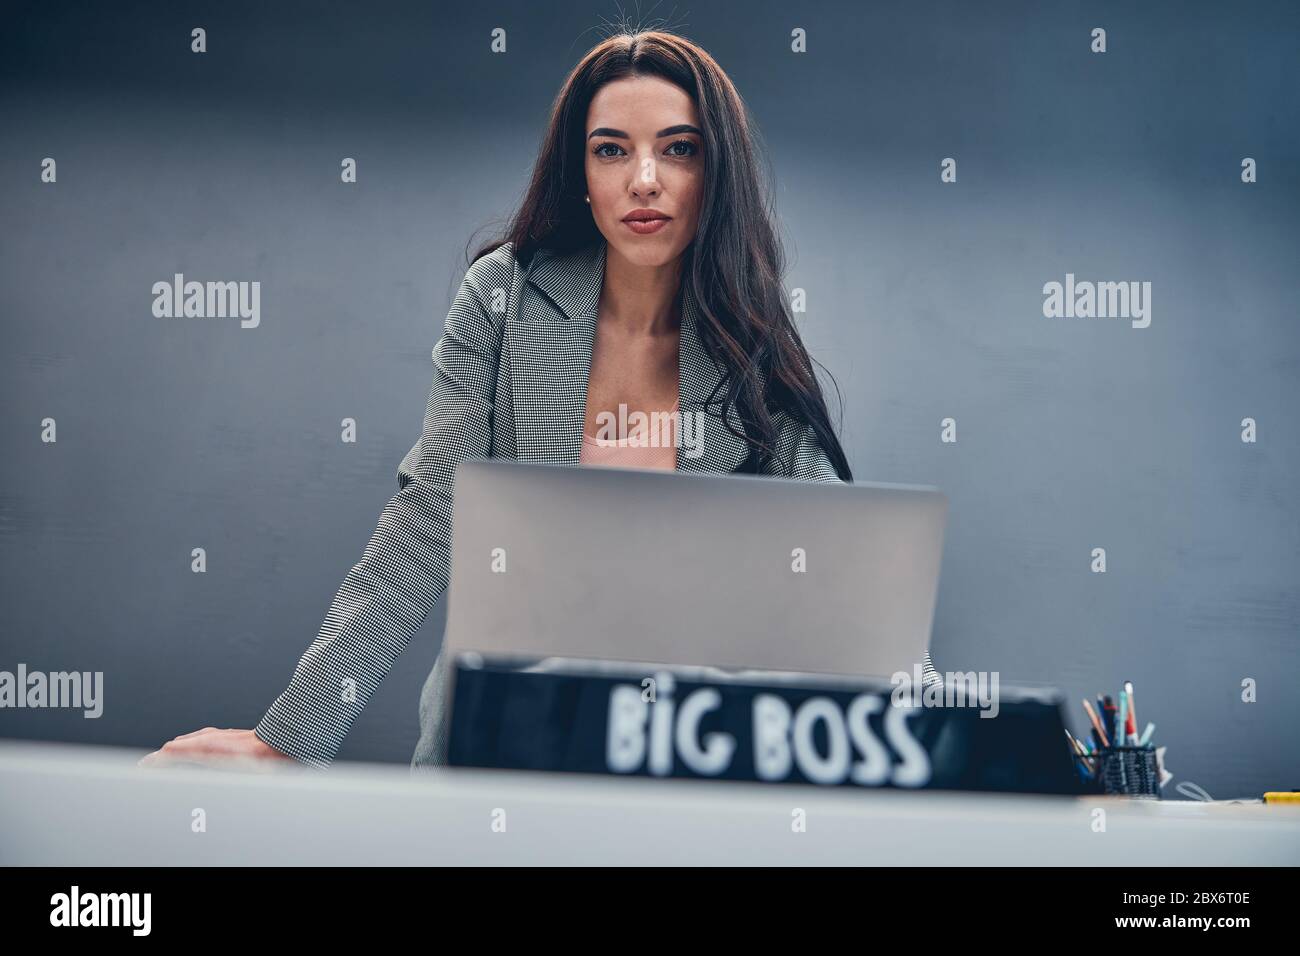 Femme d'affaires se penchée sur un bureau avec un ordinateur portable et une plaque signalétique grand patron Banque D'Images